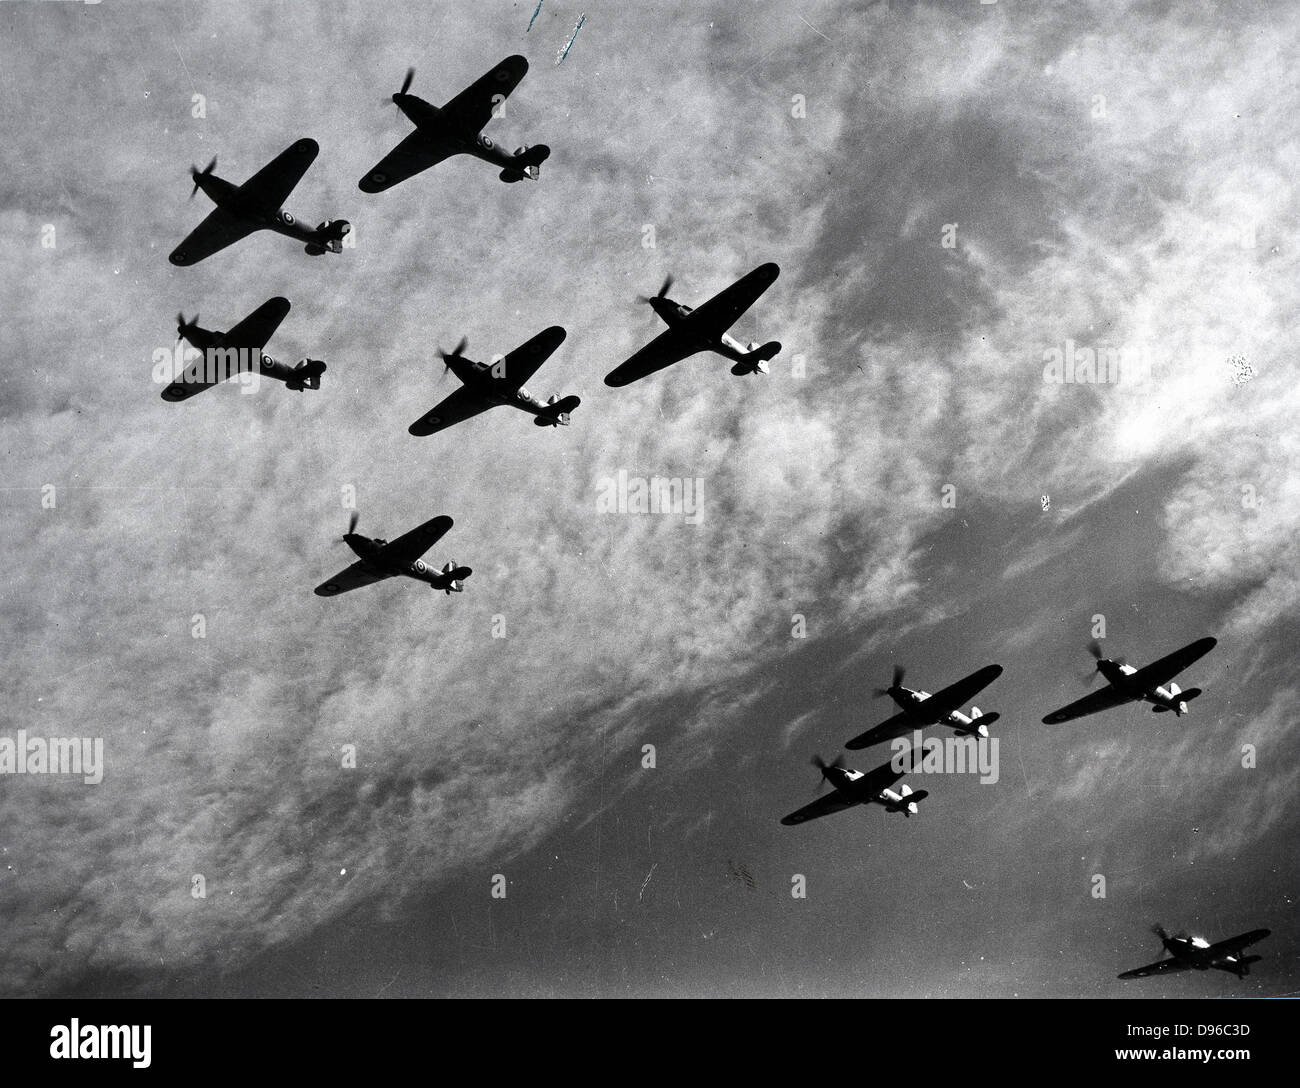 Die Schlacht um England 10. Juli-31 Oktober 1940: Hawker Hurricanes des Fighter Command, eine erste Verteidigungslinie gegen den kommenden deutschen Bomber angreifenden England, im Formationsflug in der ersten großen Schlacht in der Luft gewonnen werden. Weltkrieg II. Stockfoto